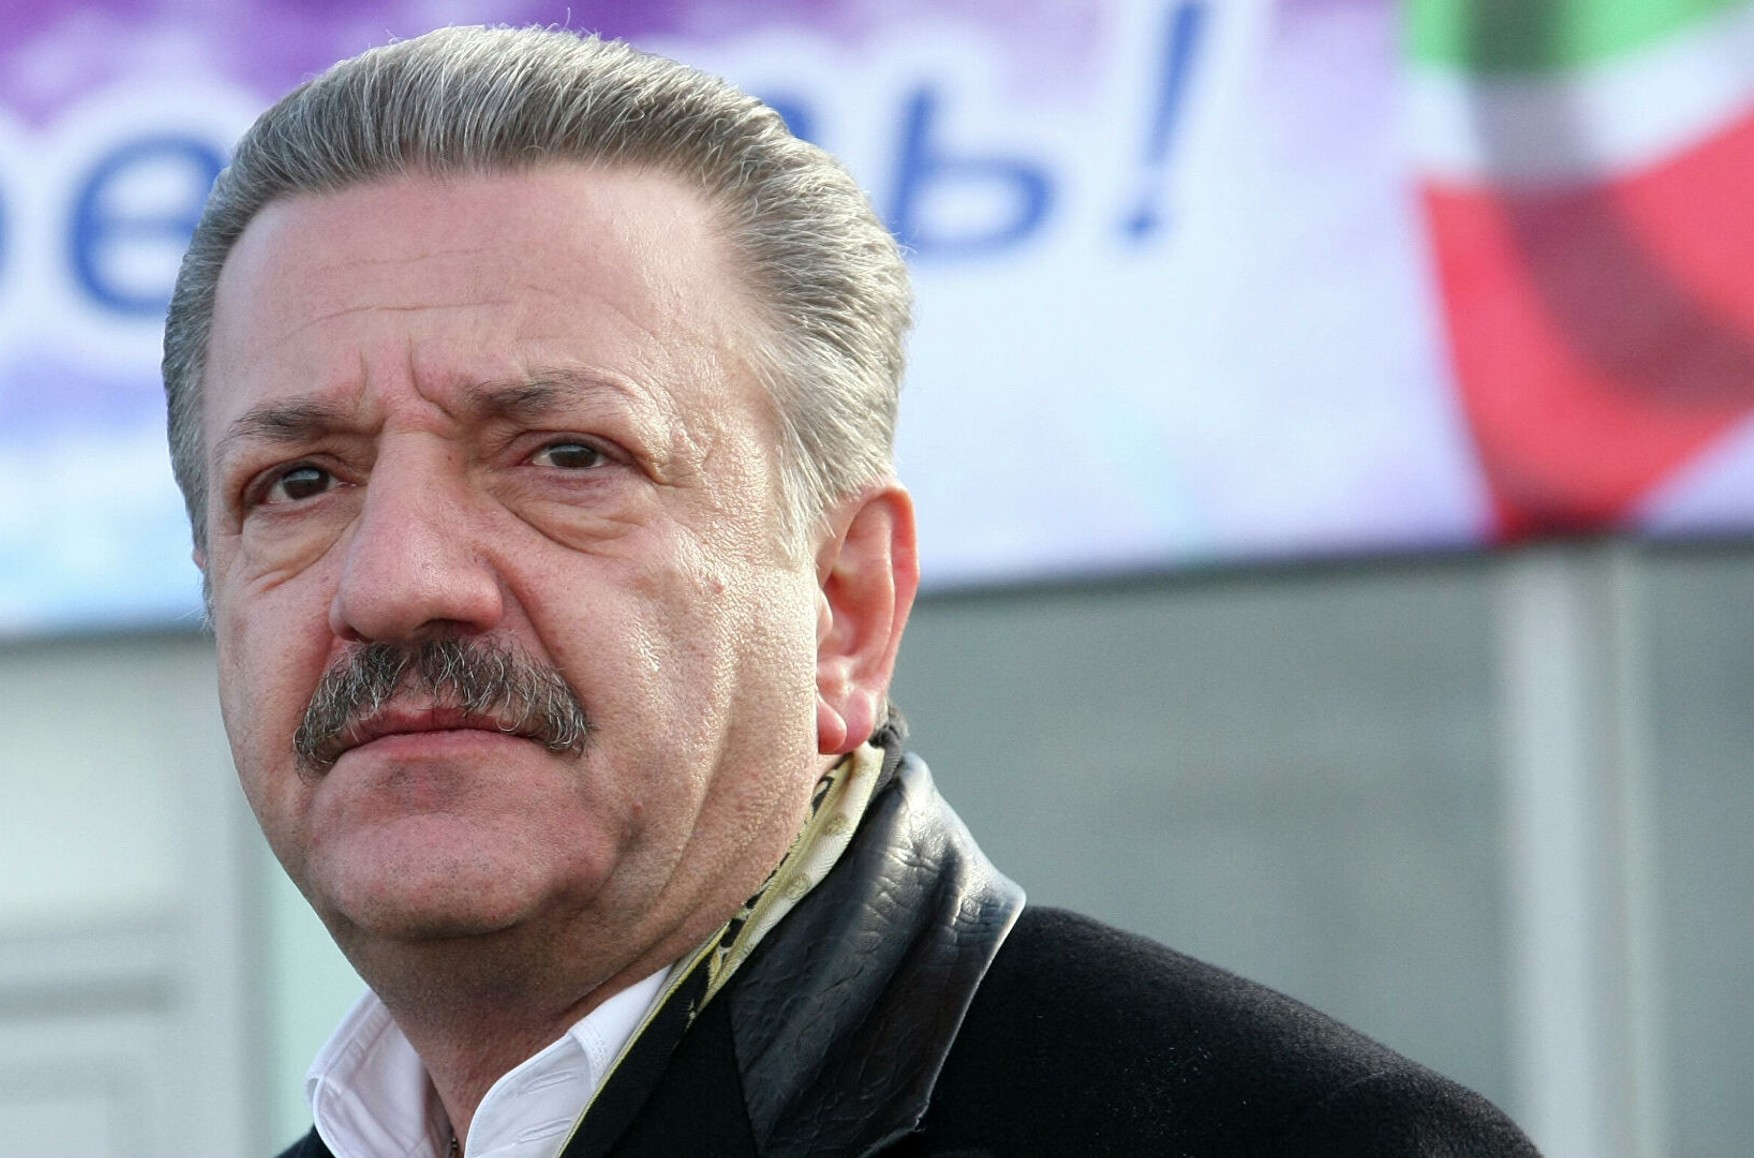 Екс-власник Черкізовського ринку Тельман Ісмаїлов попросив політичний притулок в Чорногорії